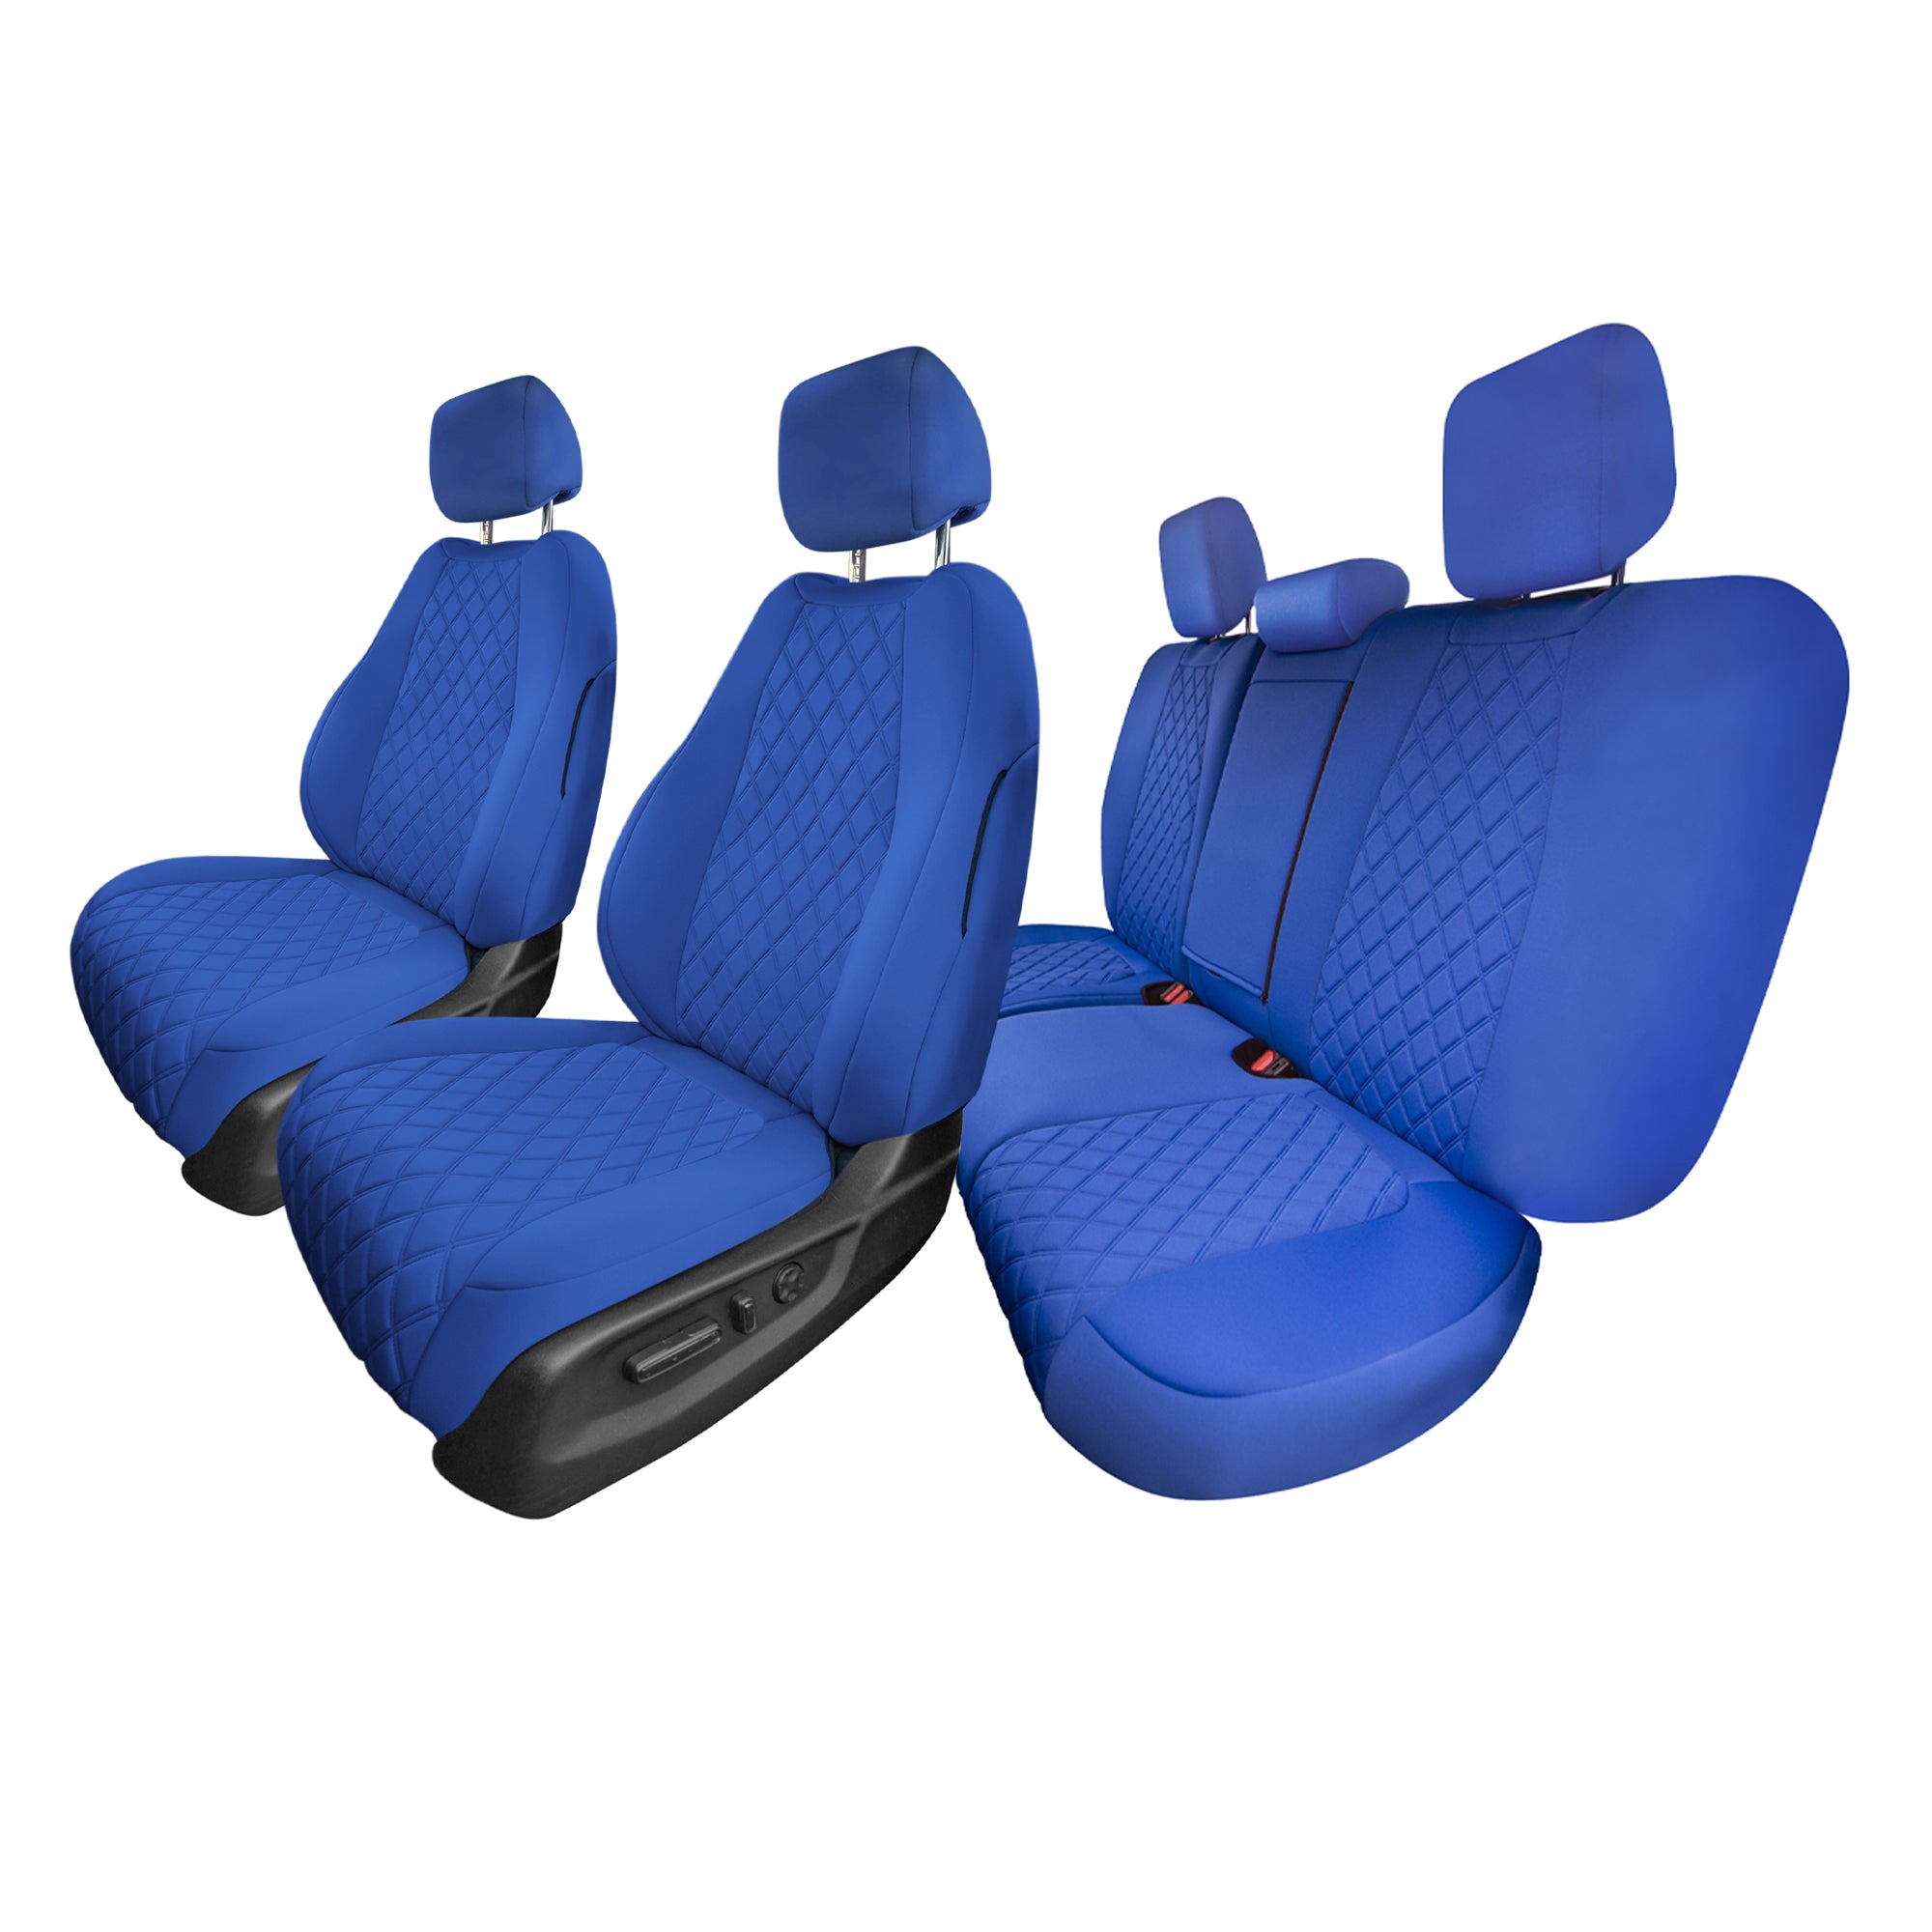 Honda CR-V 2017-2022 - Full Set Seat Covers - Solid Blue Ultraflex Neoprene